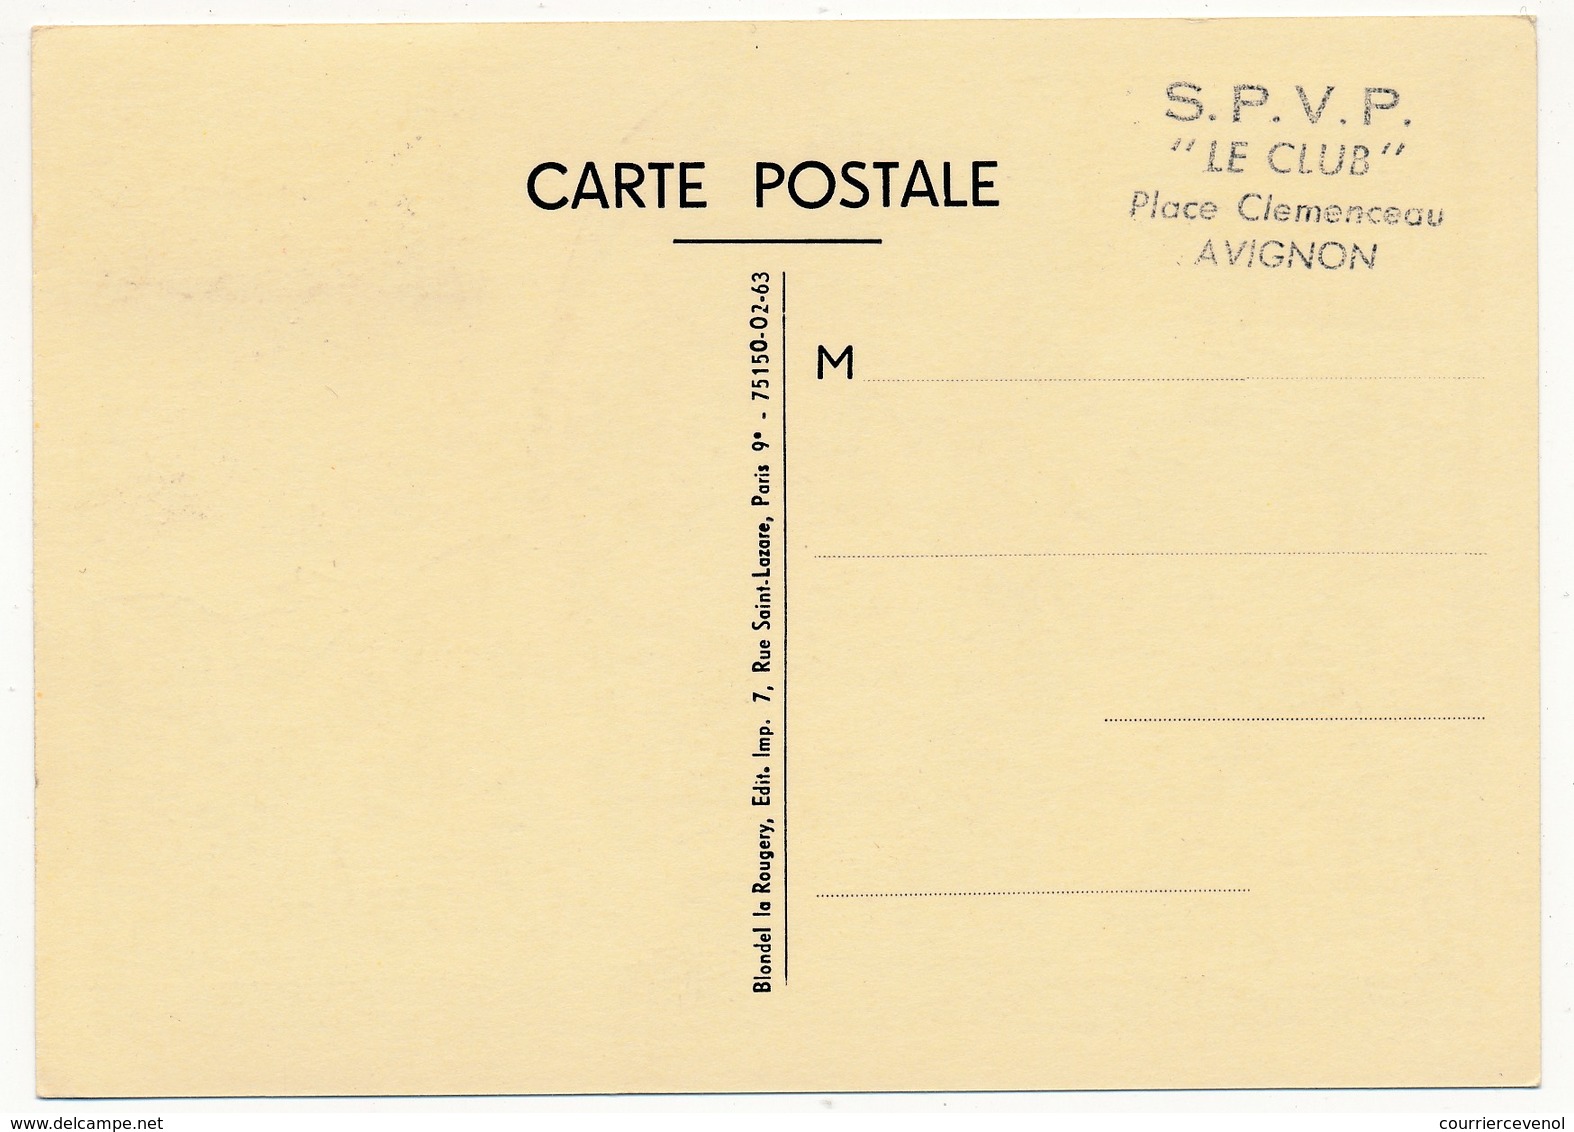 FRANCE - Carte Locale - Journée Du Timbre 1963 - Poste Gallo-romaine - AVIGNON (Vaucluse) - 16.3.1963 - Journée Du Timbre